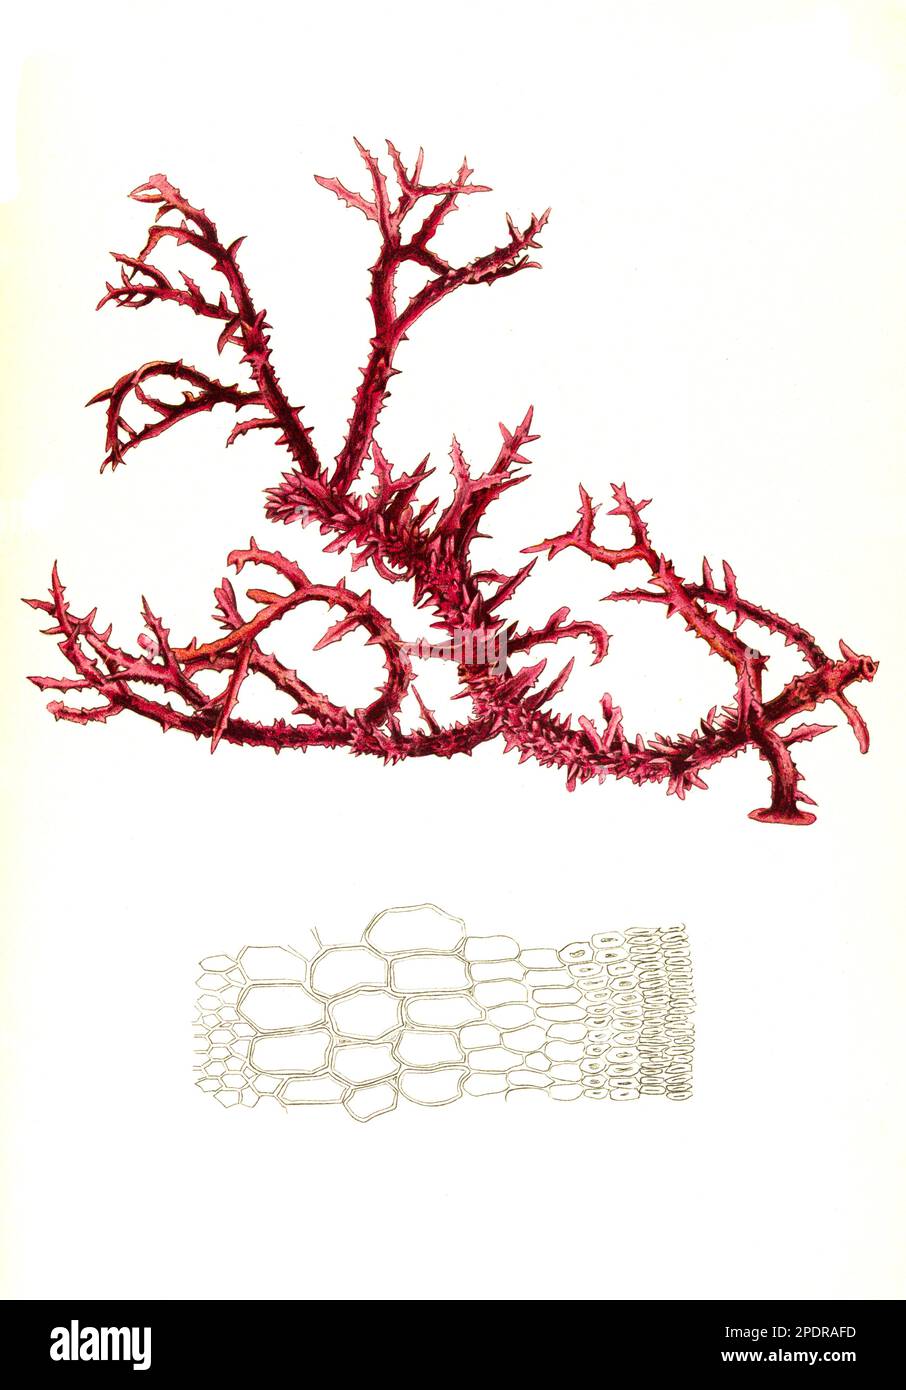 Nutzpflanze, Eucheuma spinosum, zur Carrageenherstellung genutzte Algenart, Historisch, digital restaurierte Reproduktion von einer Vorlage aus dem 18. Jahrhundert, Stock Photo